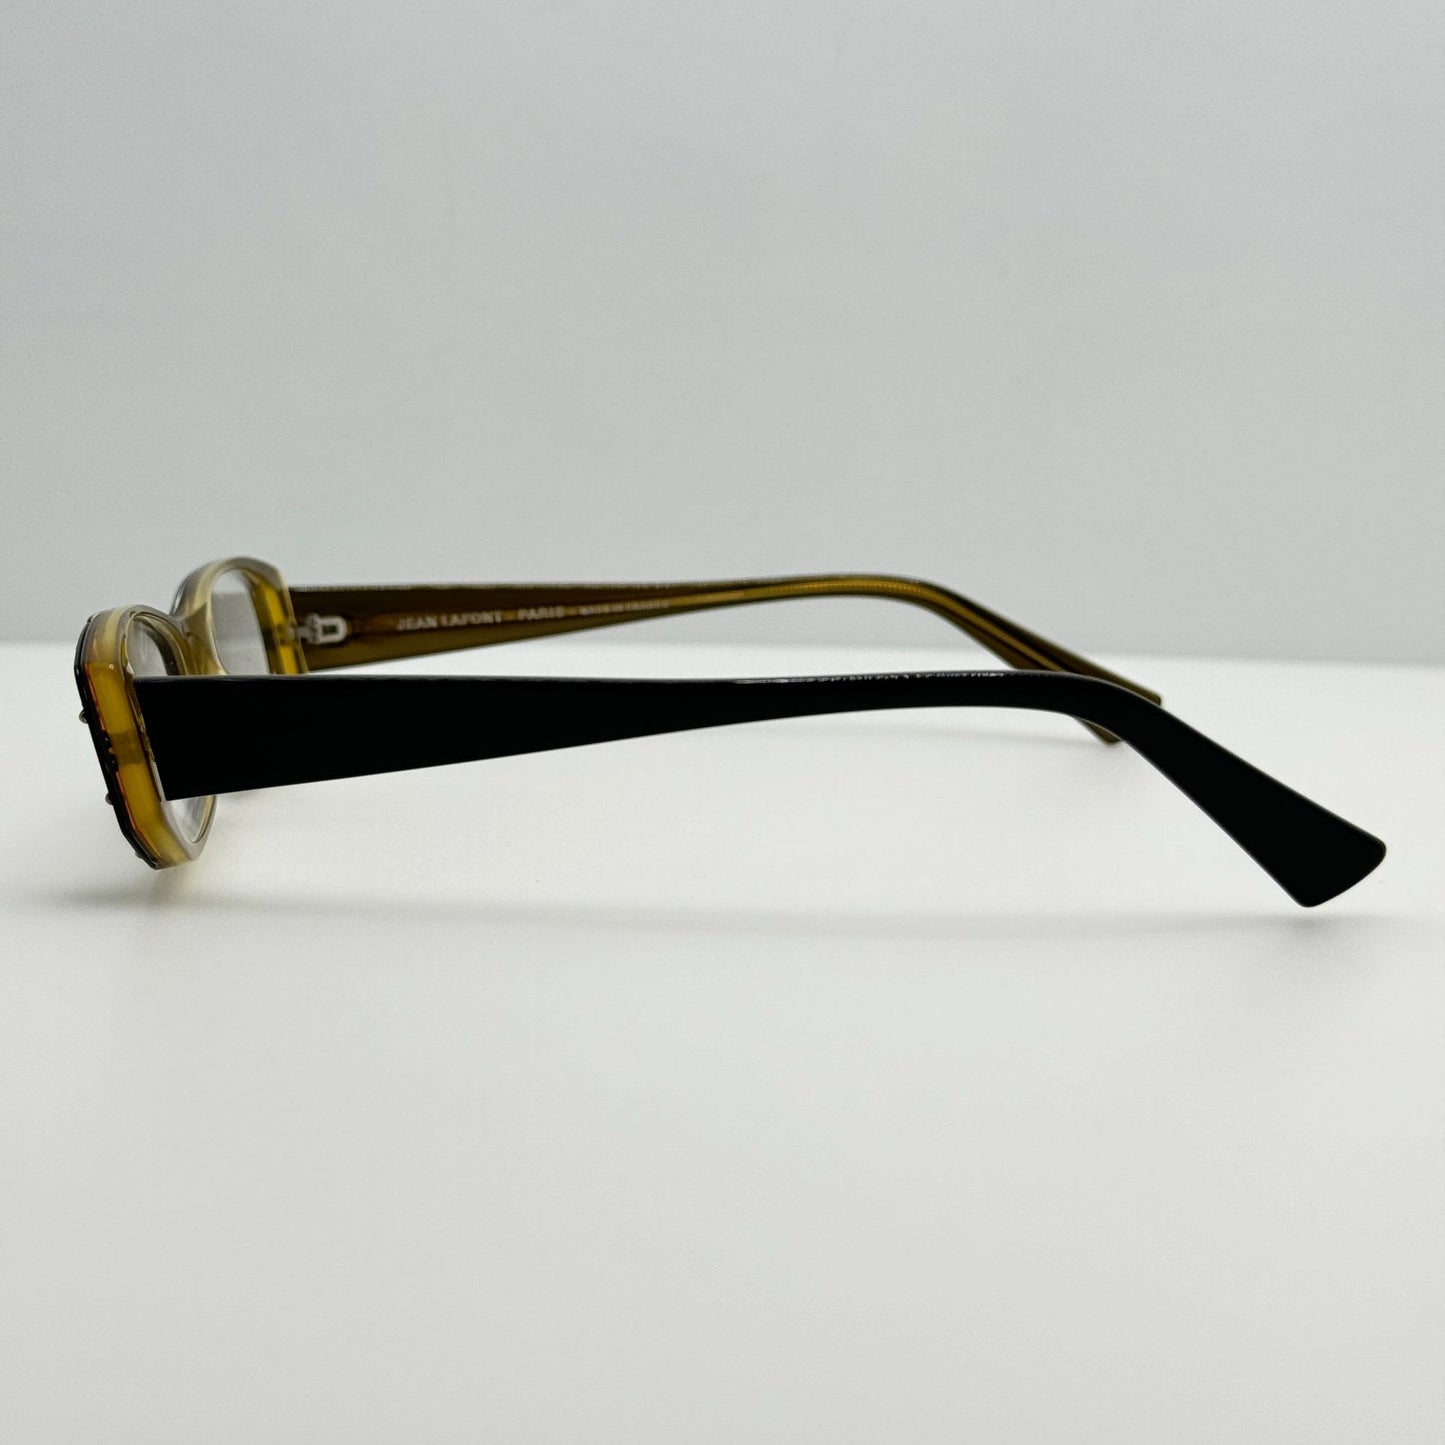 Jean Lafont Eyeglasses Eye Glasses Frames Darling 103 France 51-15-142